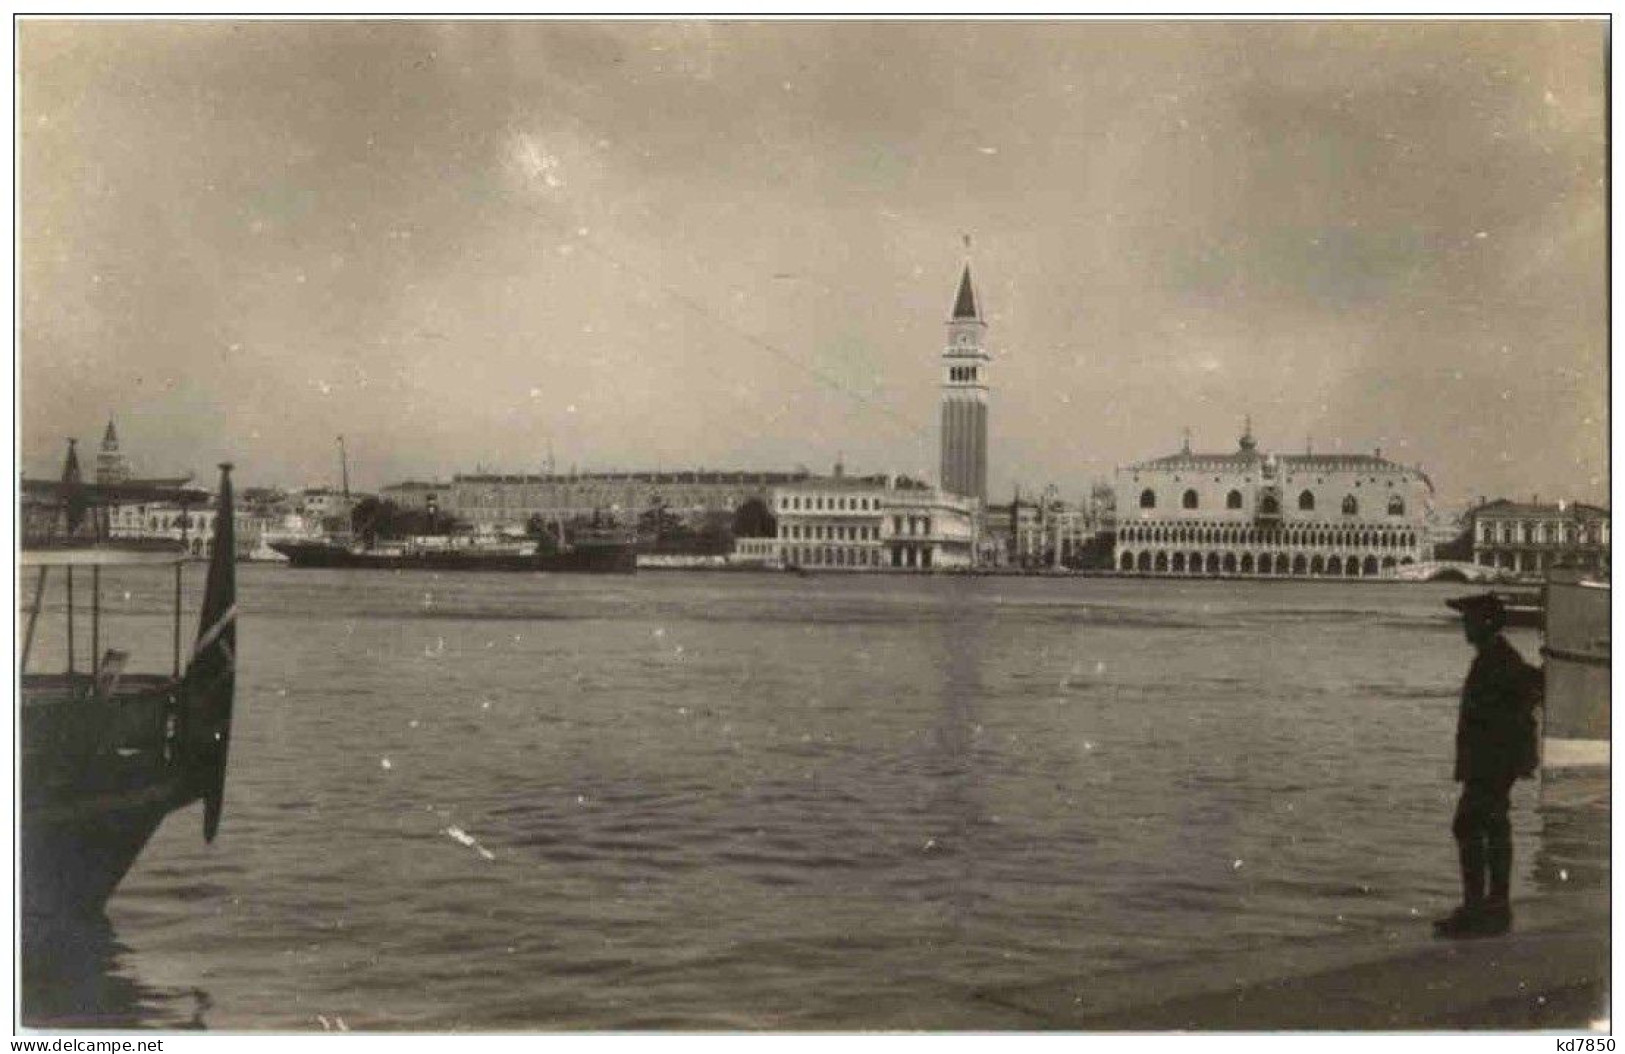 Venezia - Venezia (Venice)